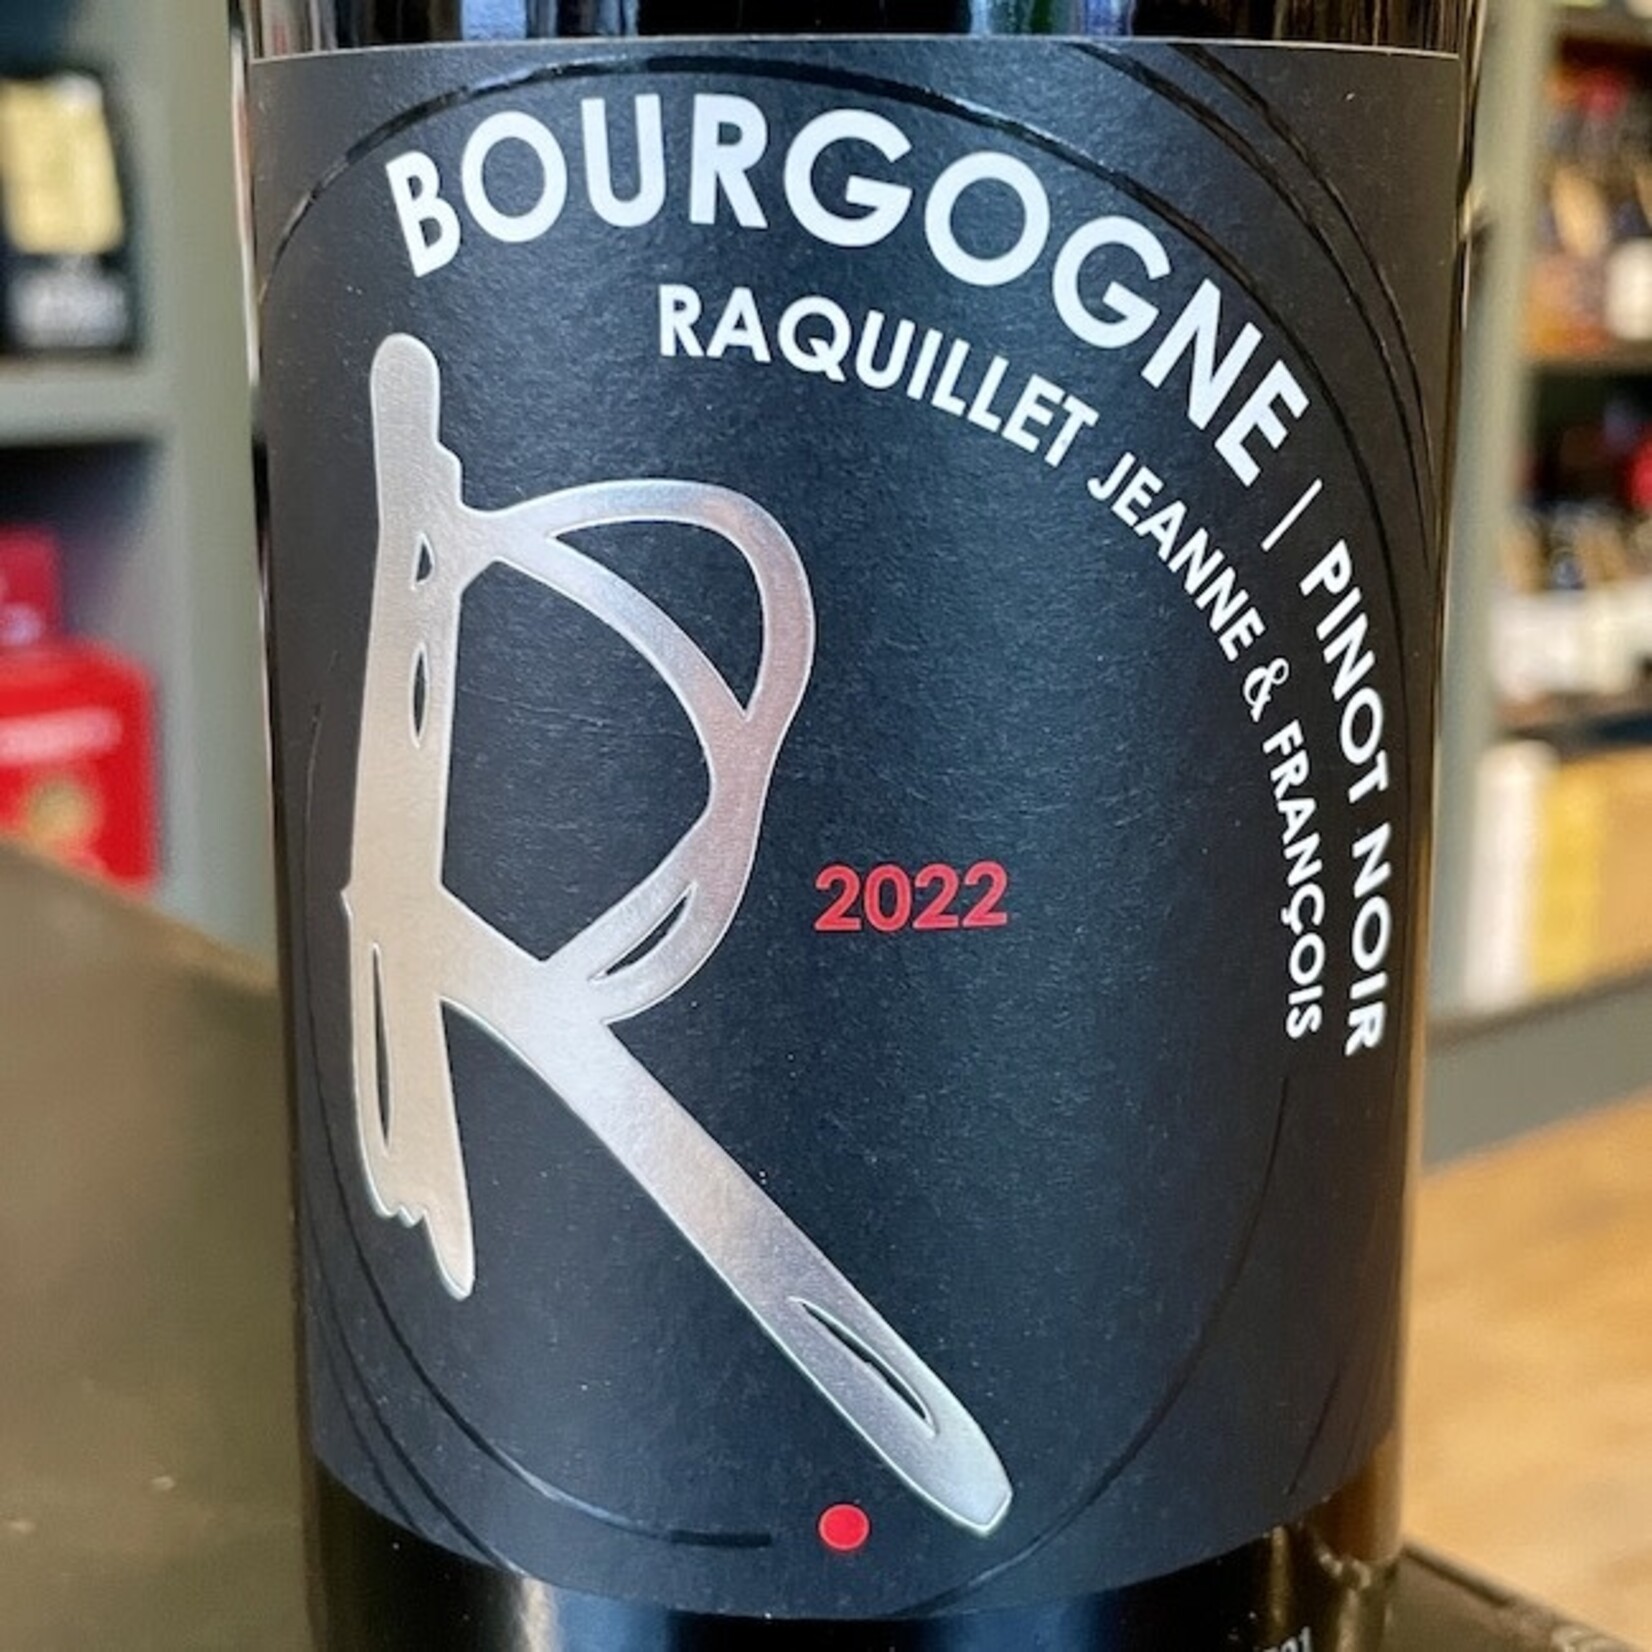 France 2022 Francois Raquillet Bourgogne